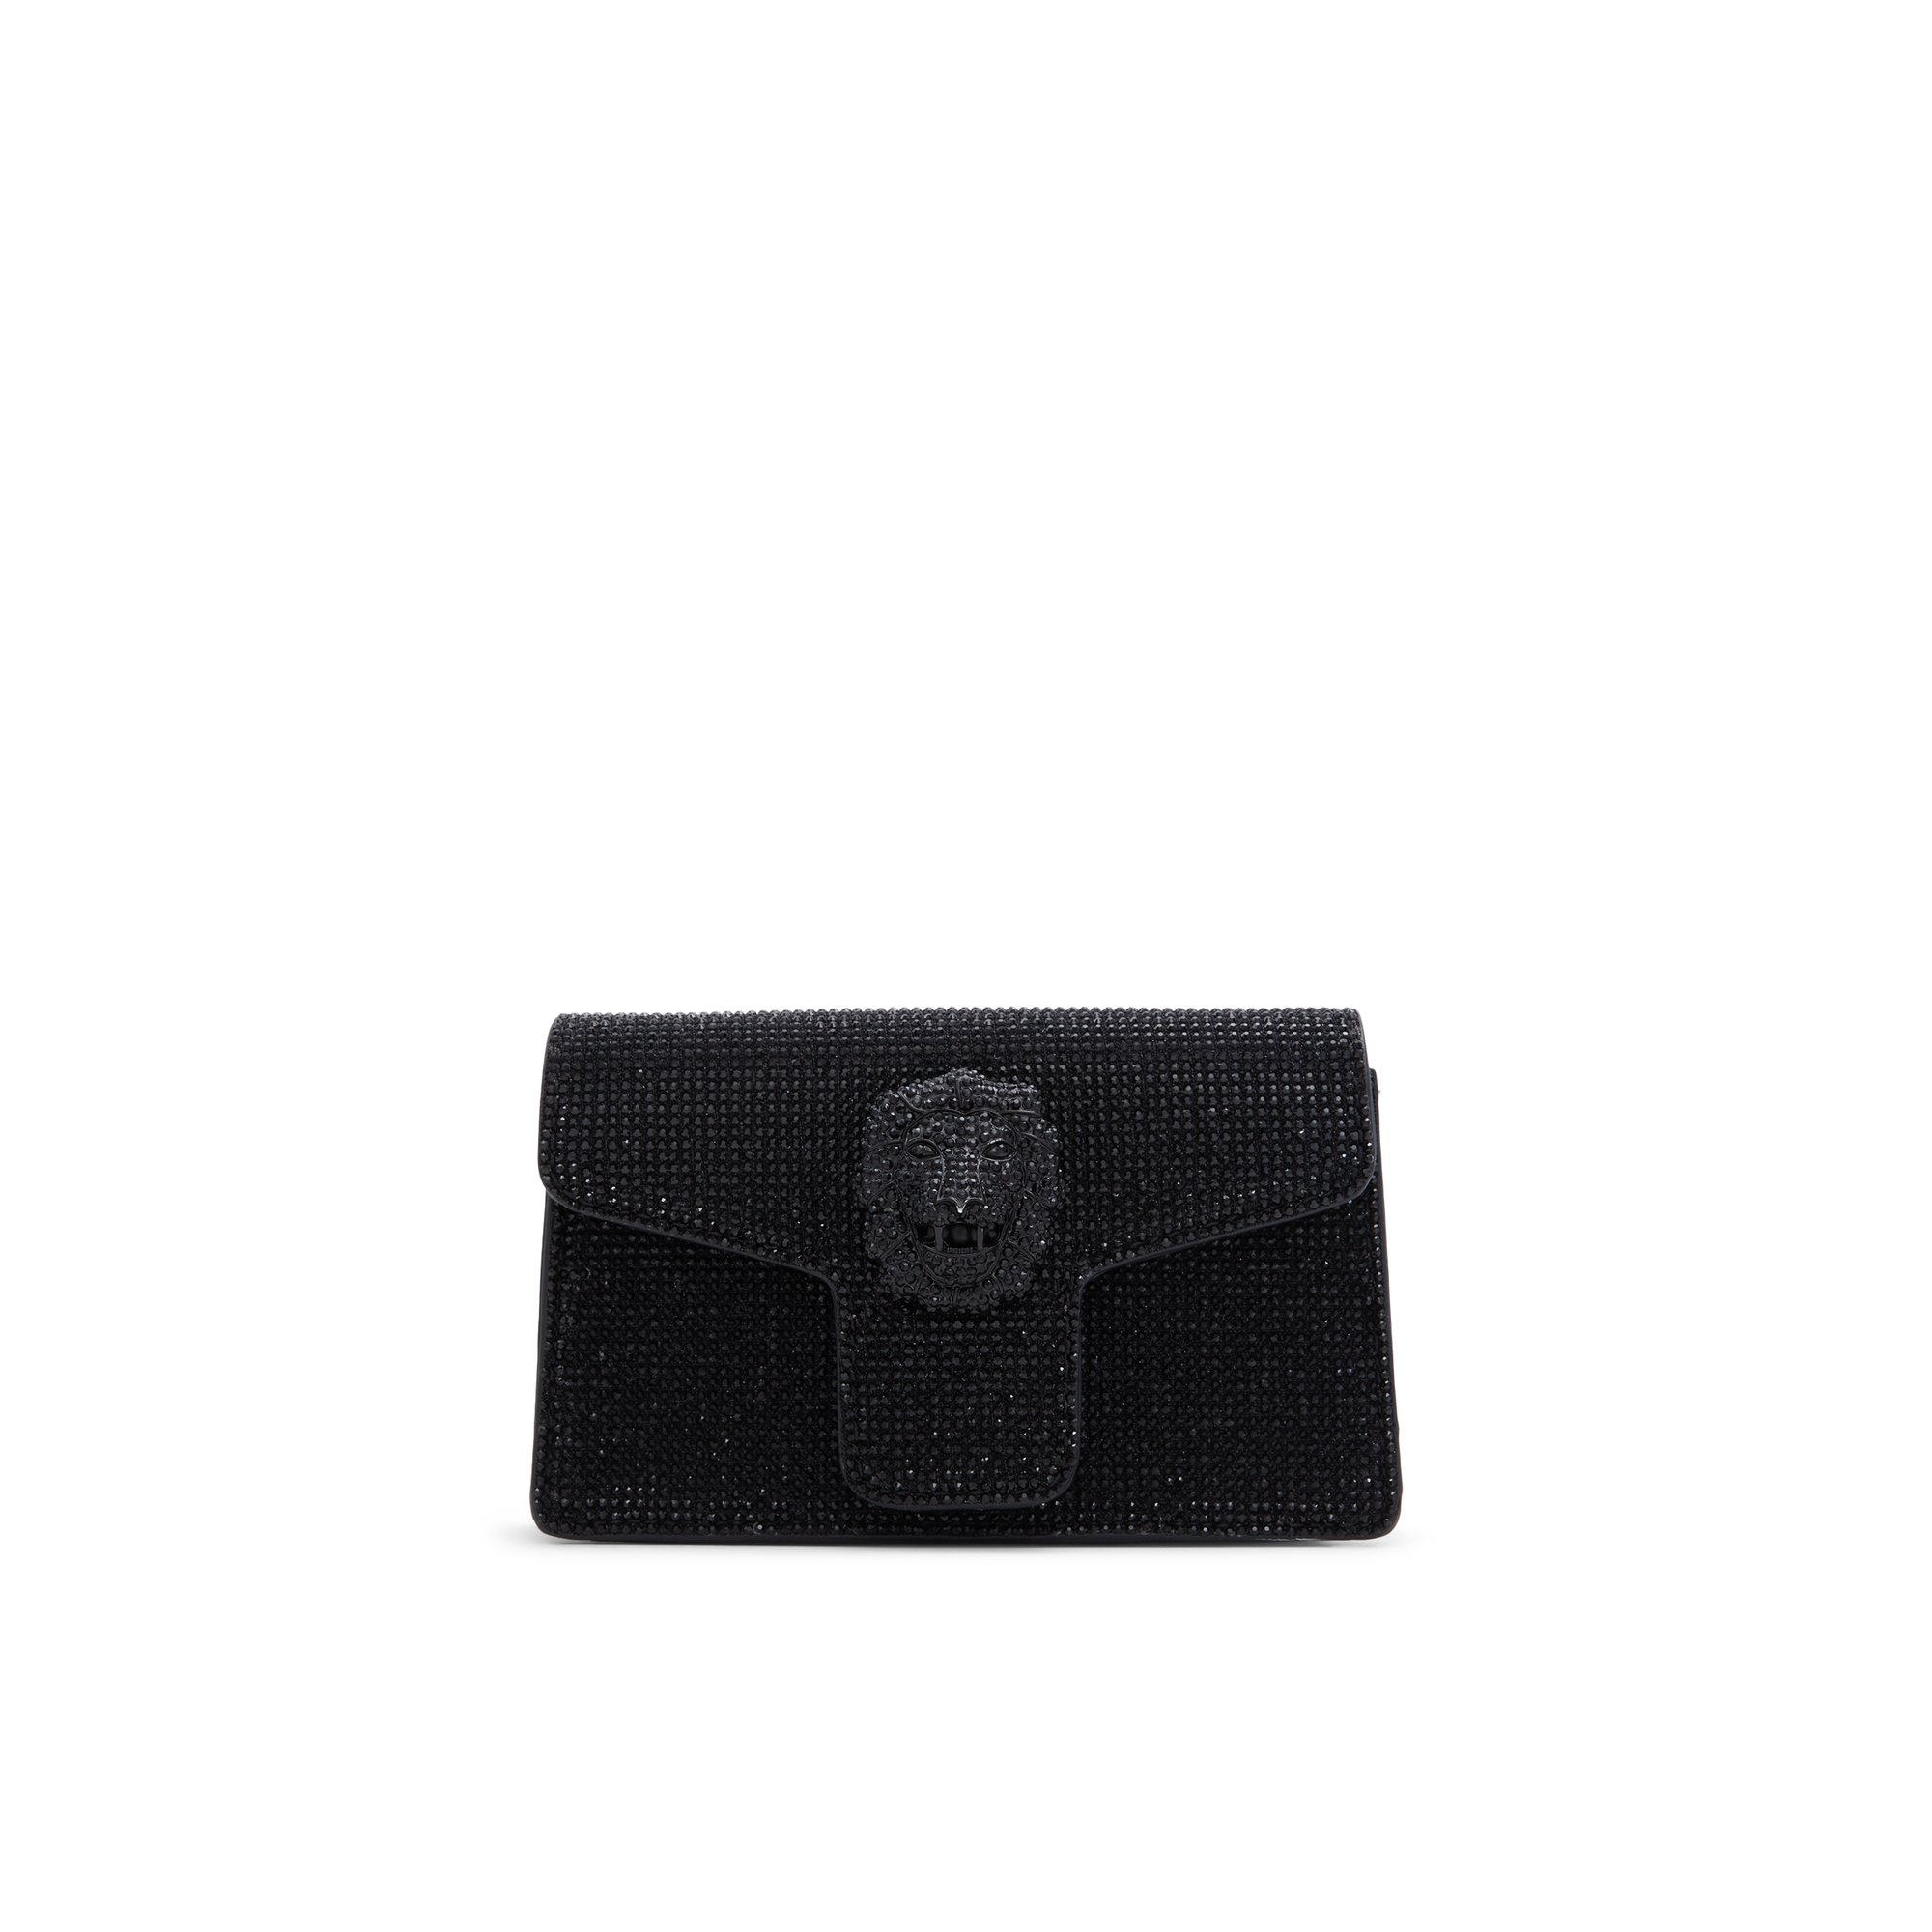 ALDO Wilathax - Women's Mini Bag Handbag - Black